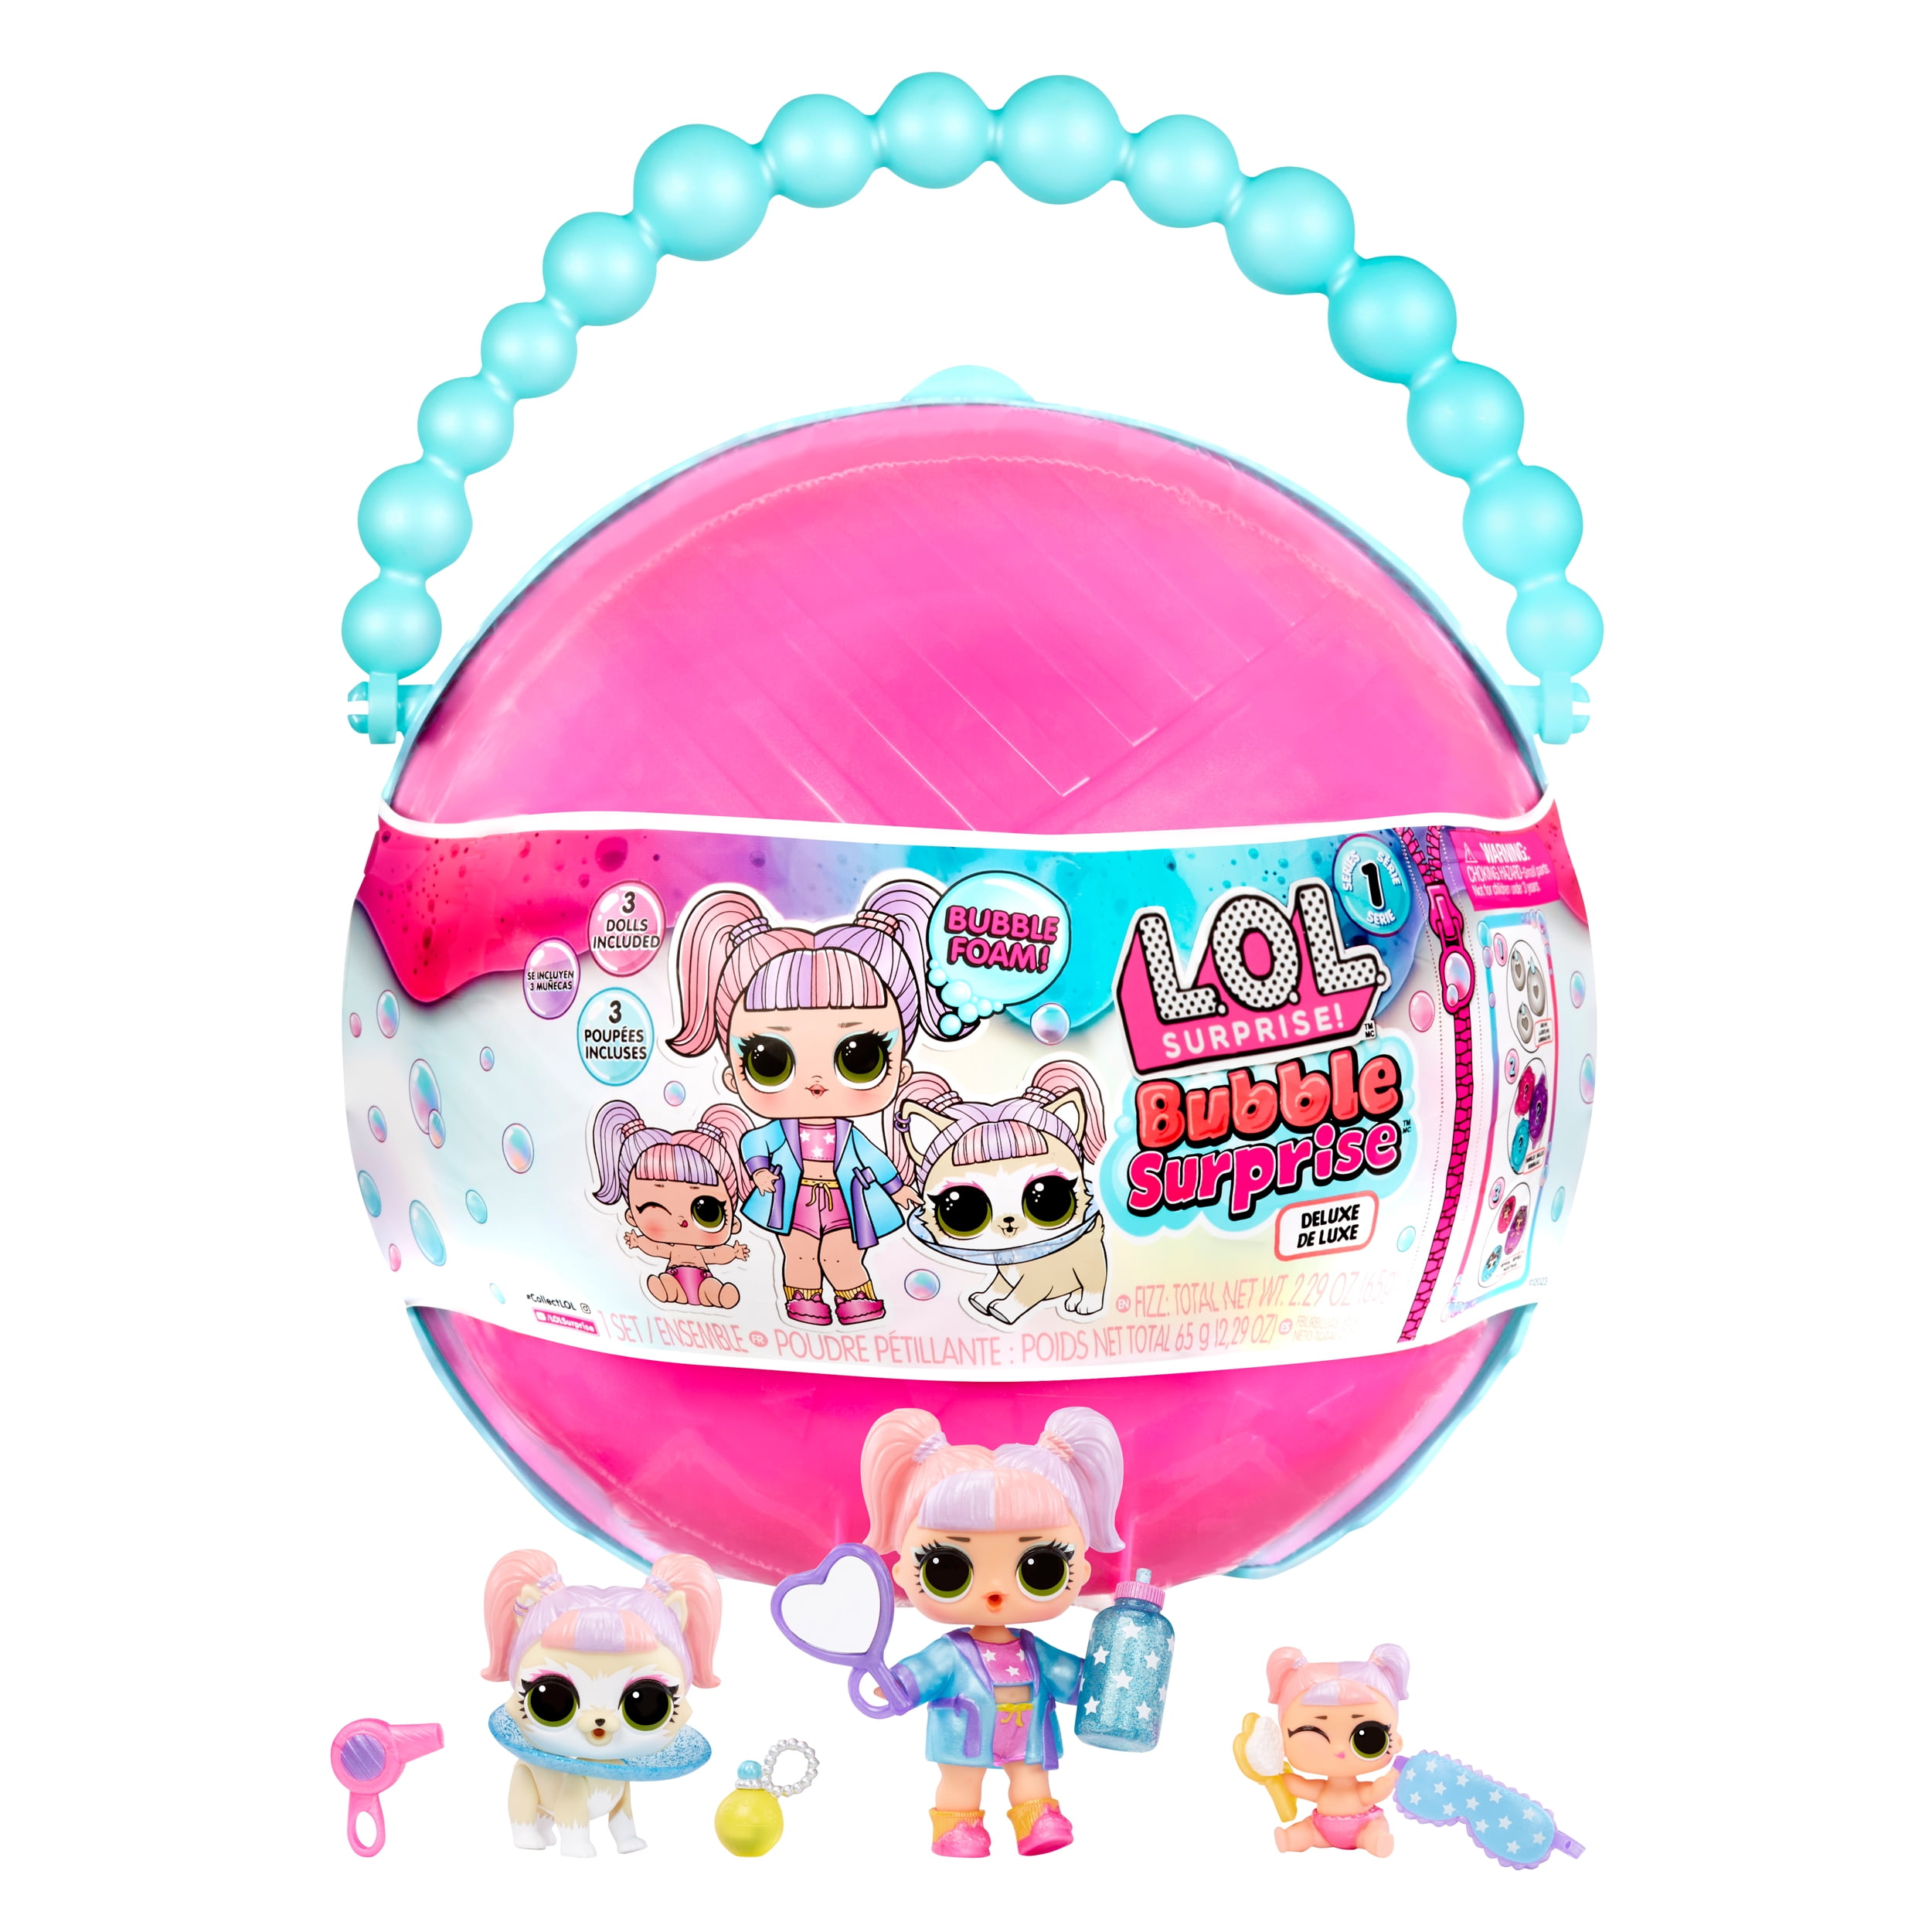 LOL Surprise! Bubble Surprise Deluxe Collectible Dolls, Pet, Baby Sister,  Surprises, Accessories, Surprise Unboxing, Color Change Foam, Girls Gift  Age